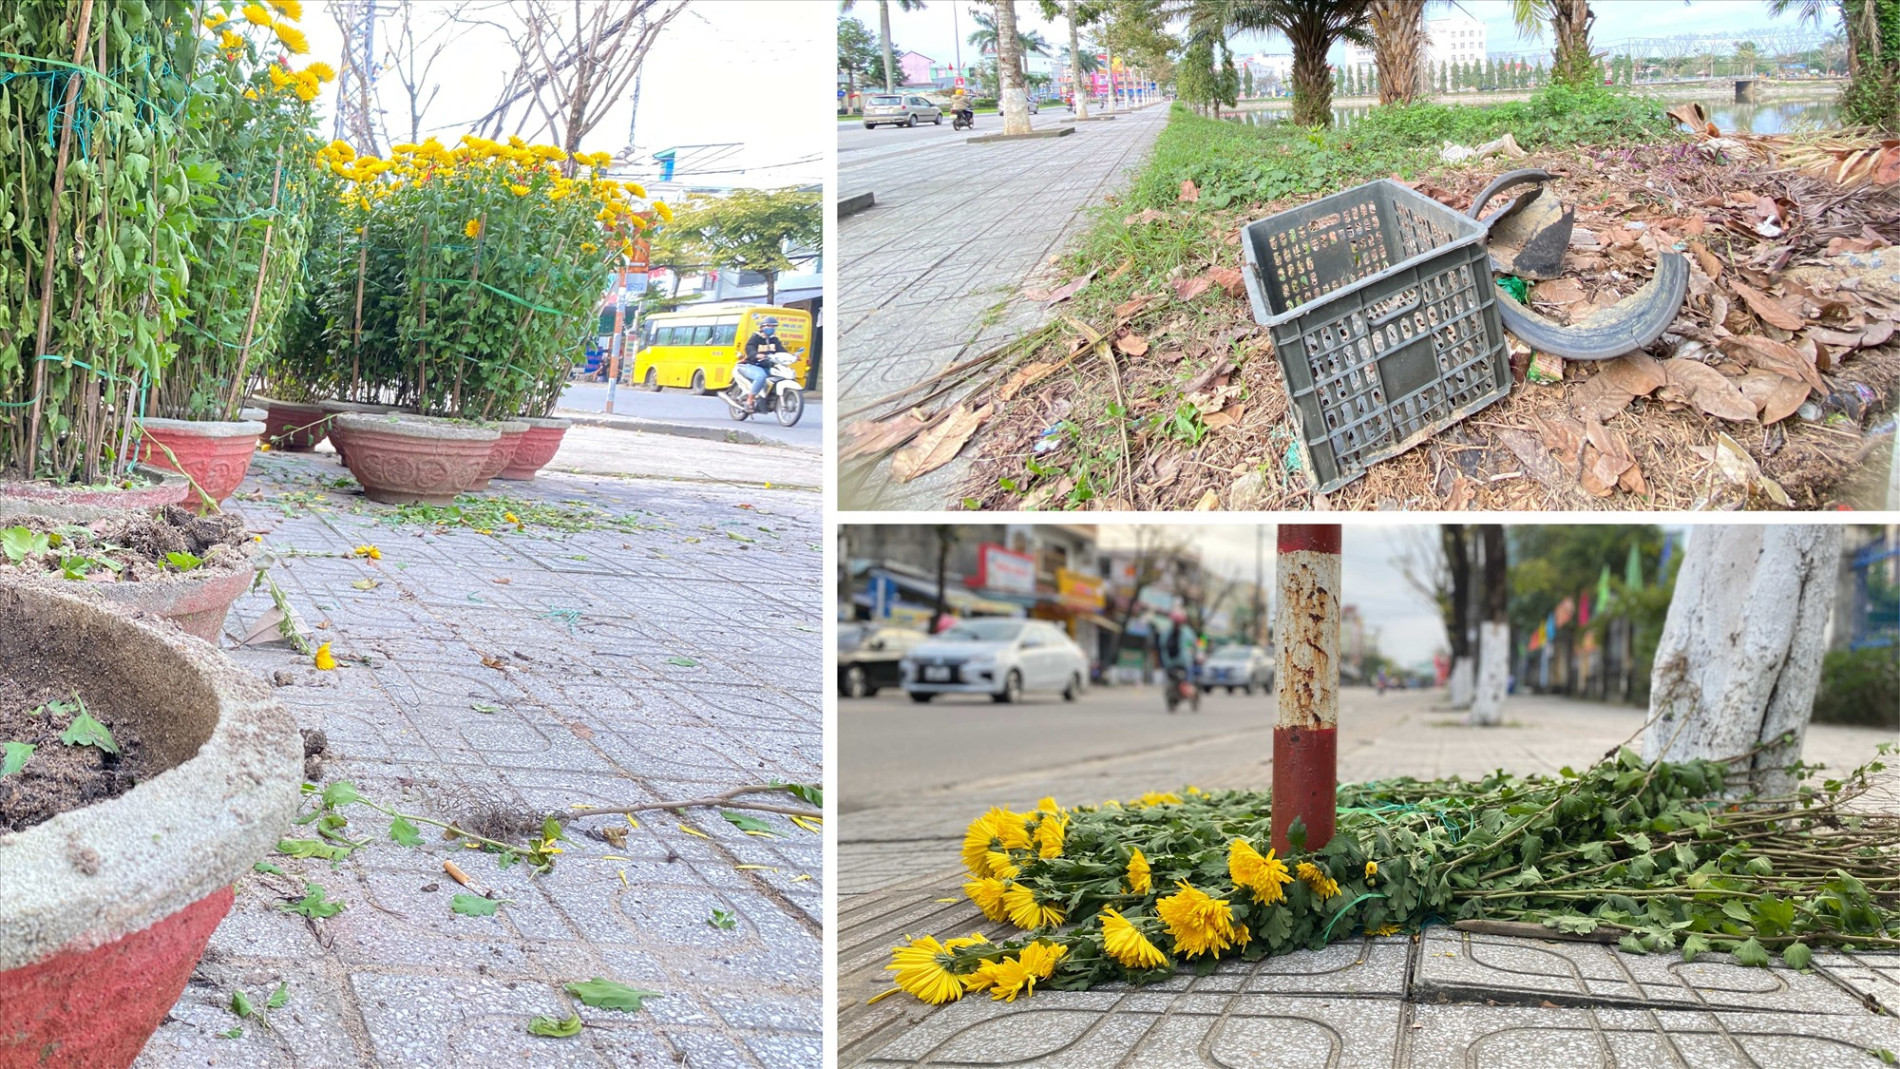 Chậu và hoa bị vứt nhếch nhác trên các tuyến đường Phan Bội Châu, Trần Cao Vân, Hùng Vương (Tam Kỳ).